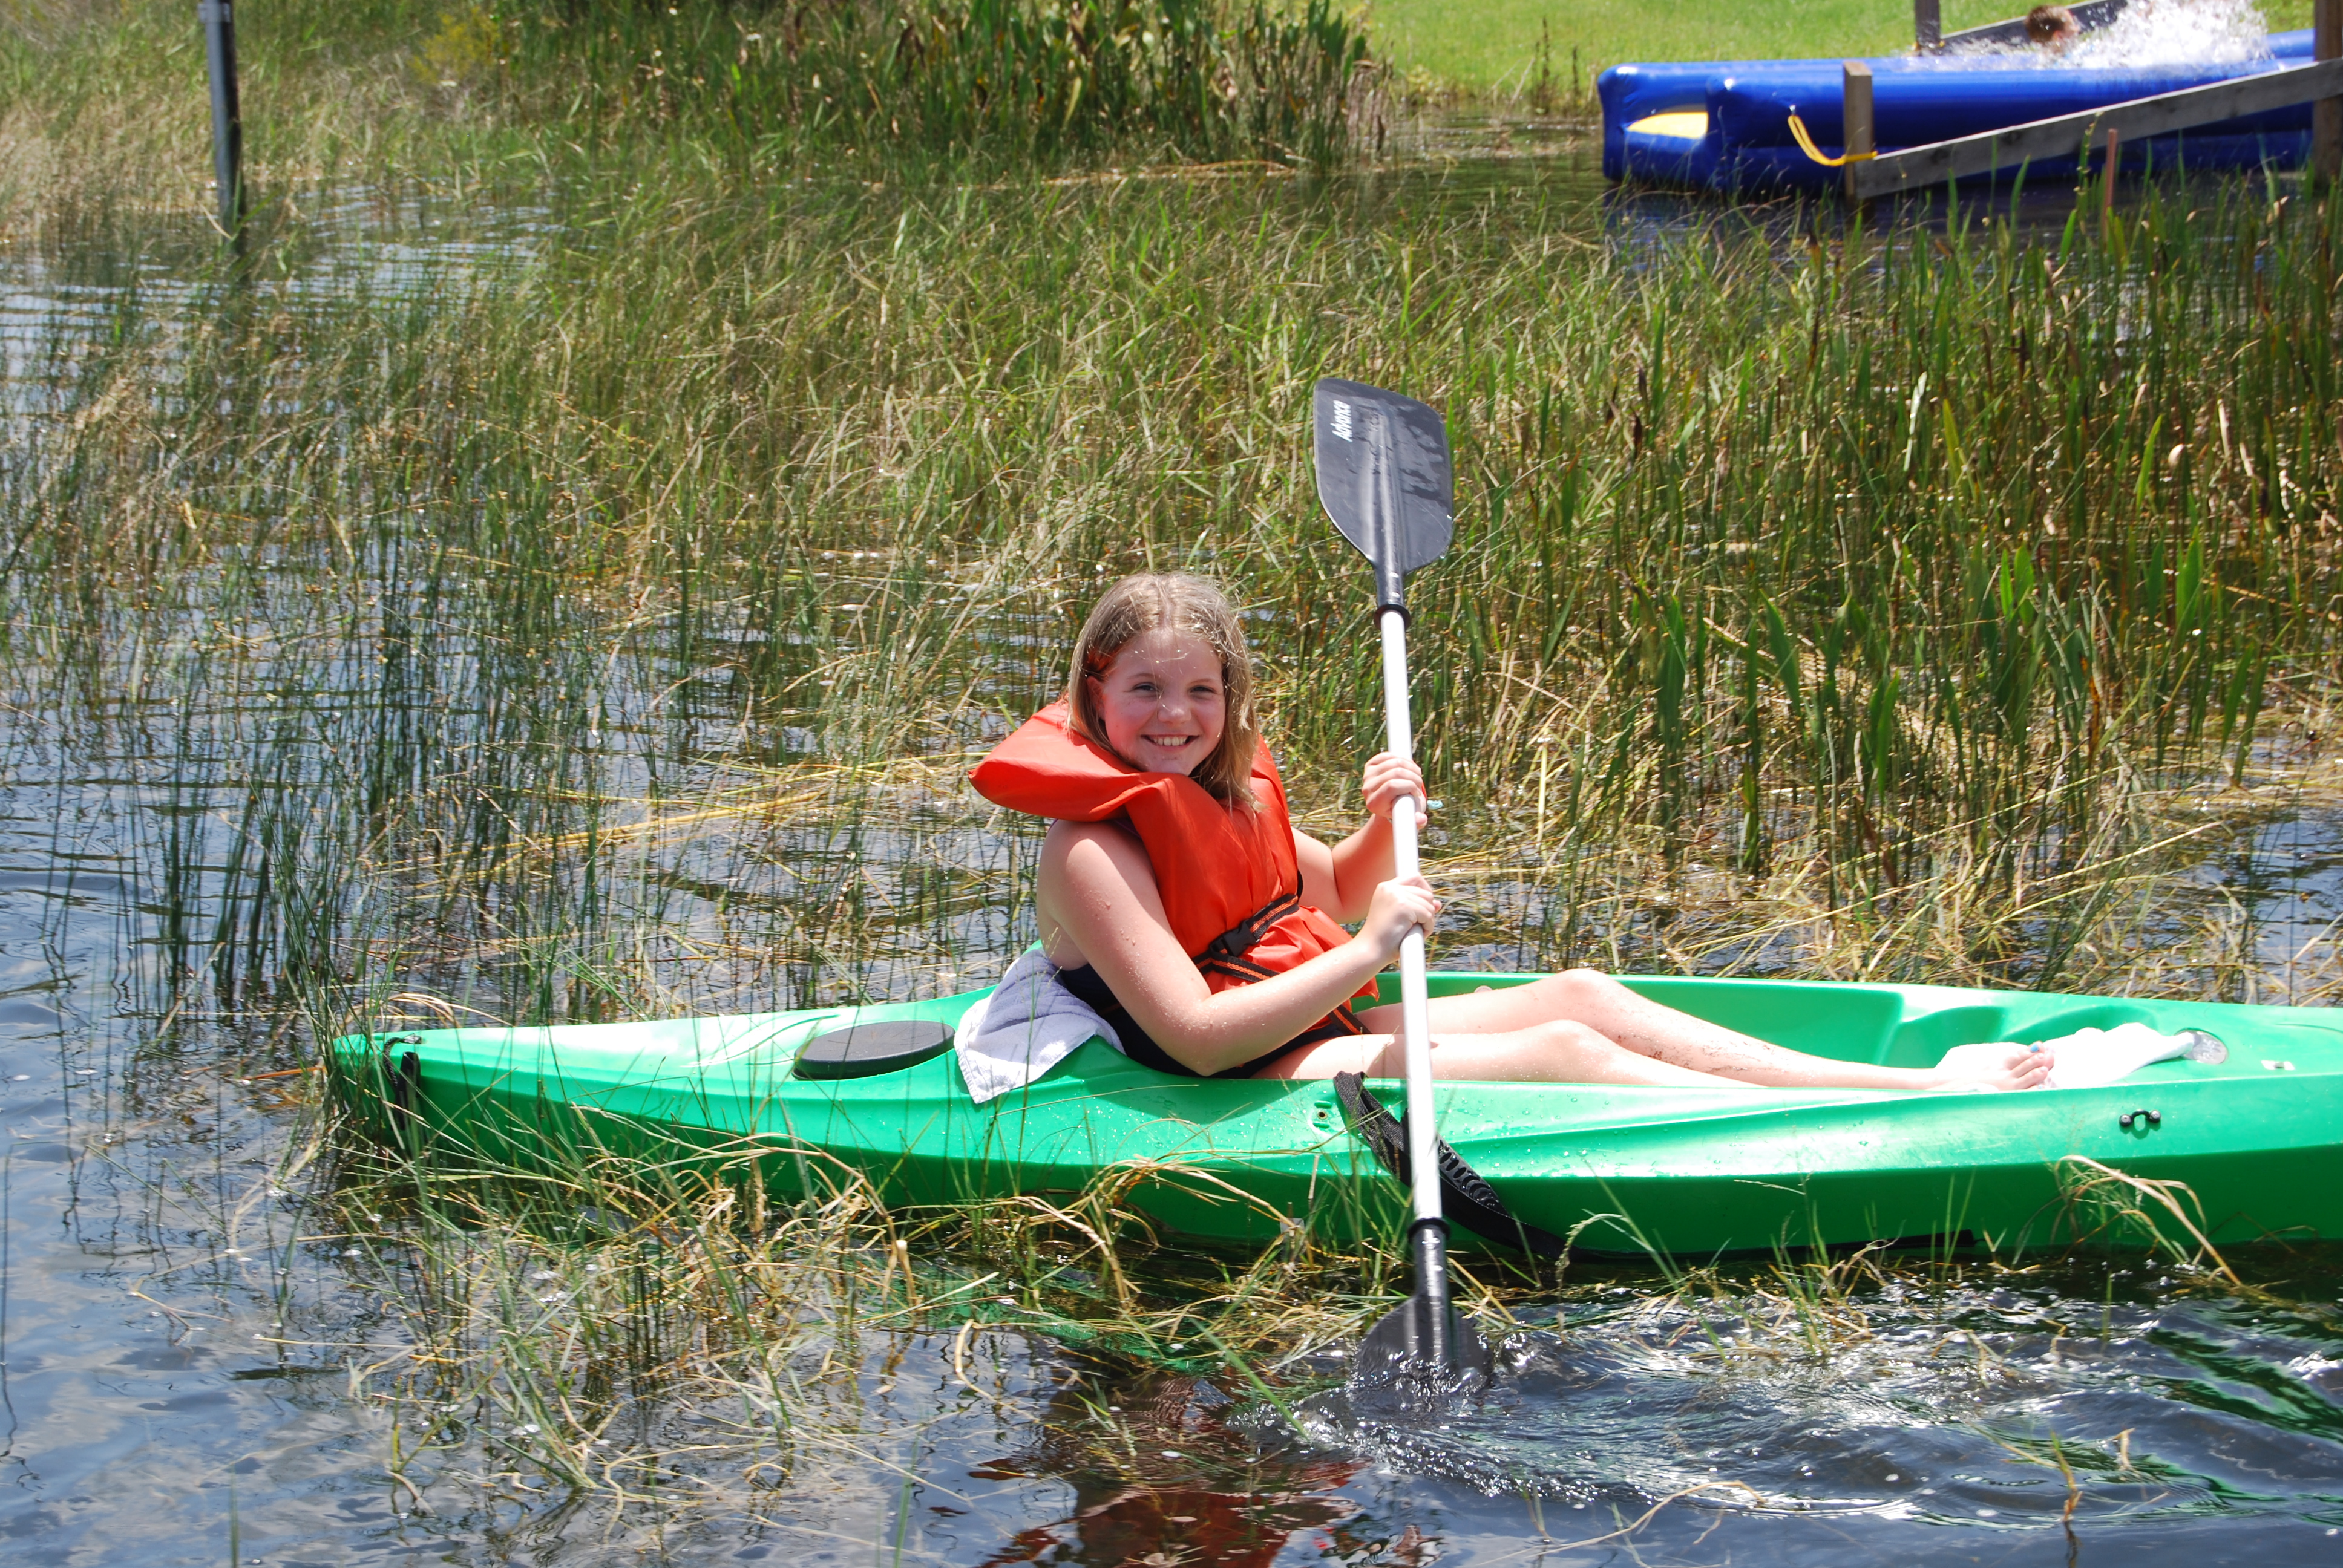 Girl camper on kayak